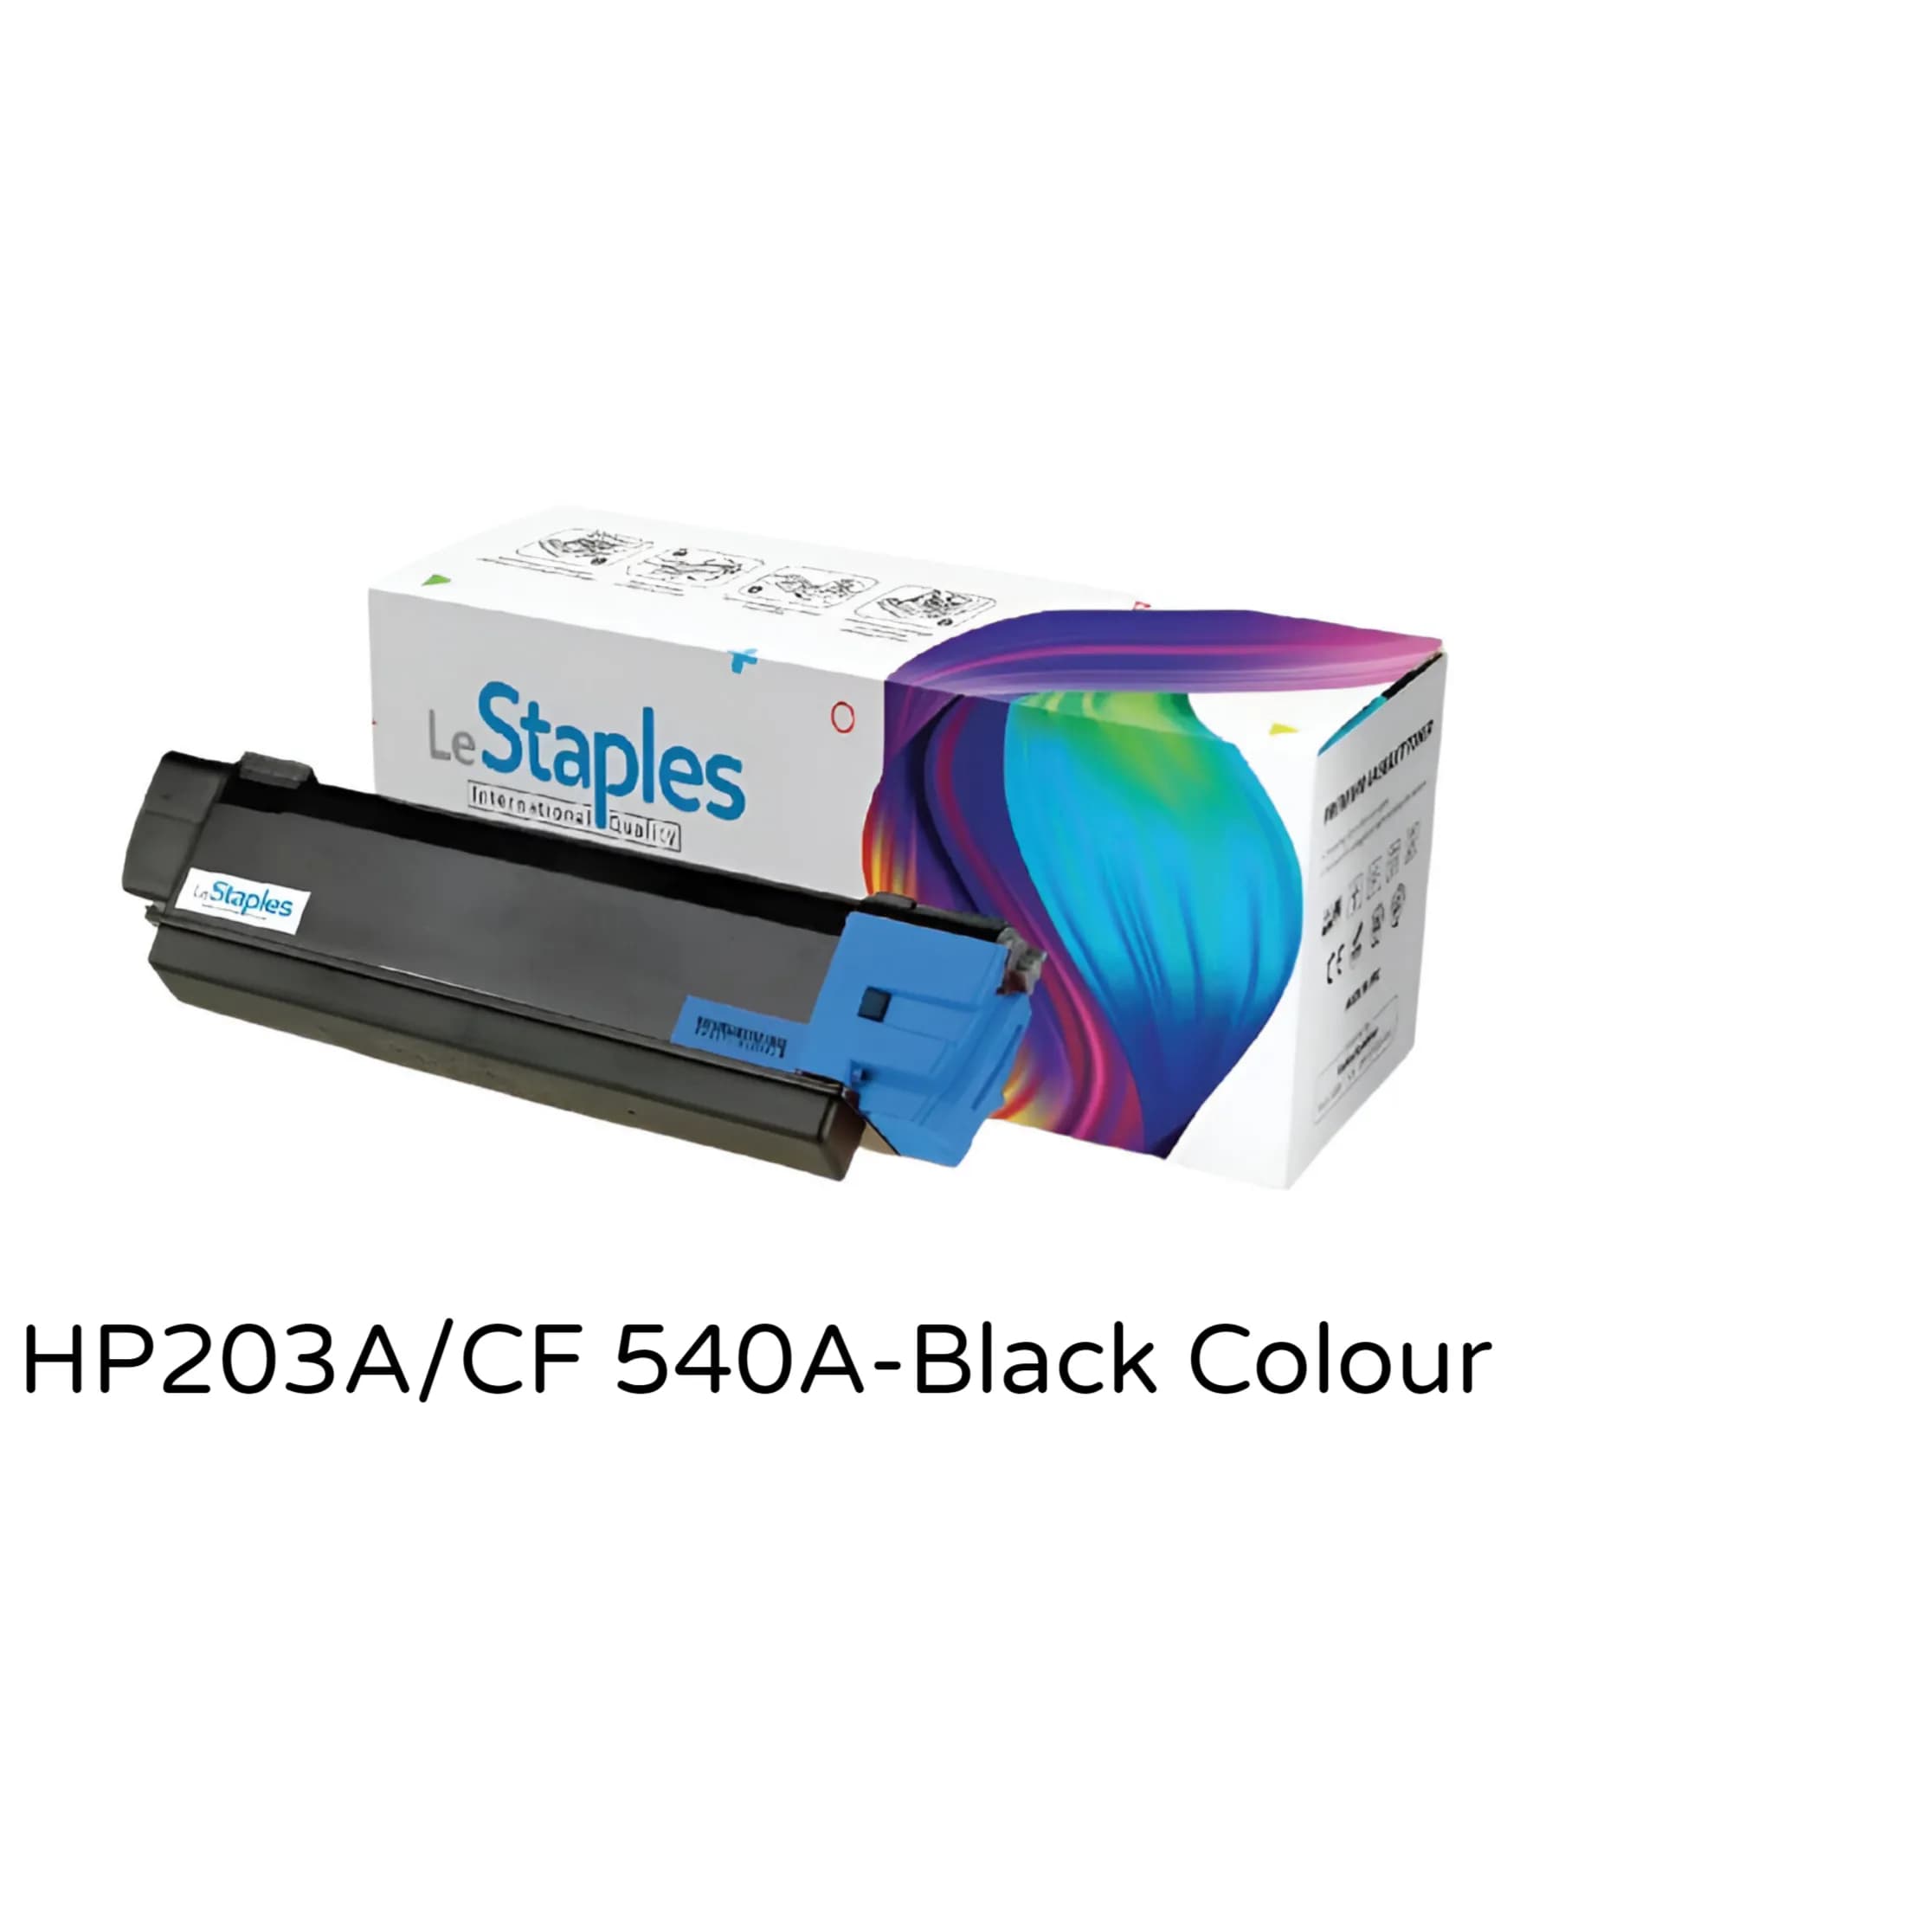 Le Staples Original Toner .Replacement For LaserJet  Cartridge  HP203A/CF 540A-Black Colour CGSL09_540A